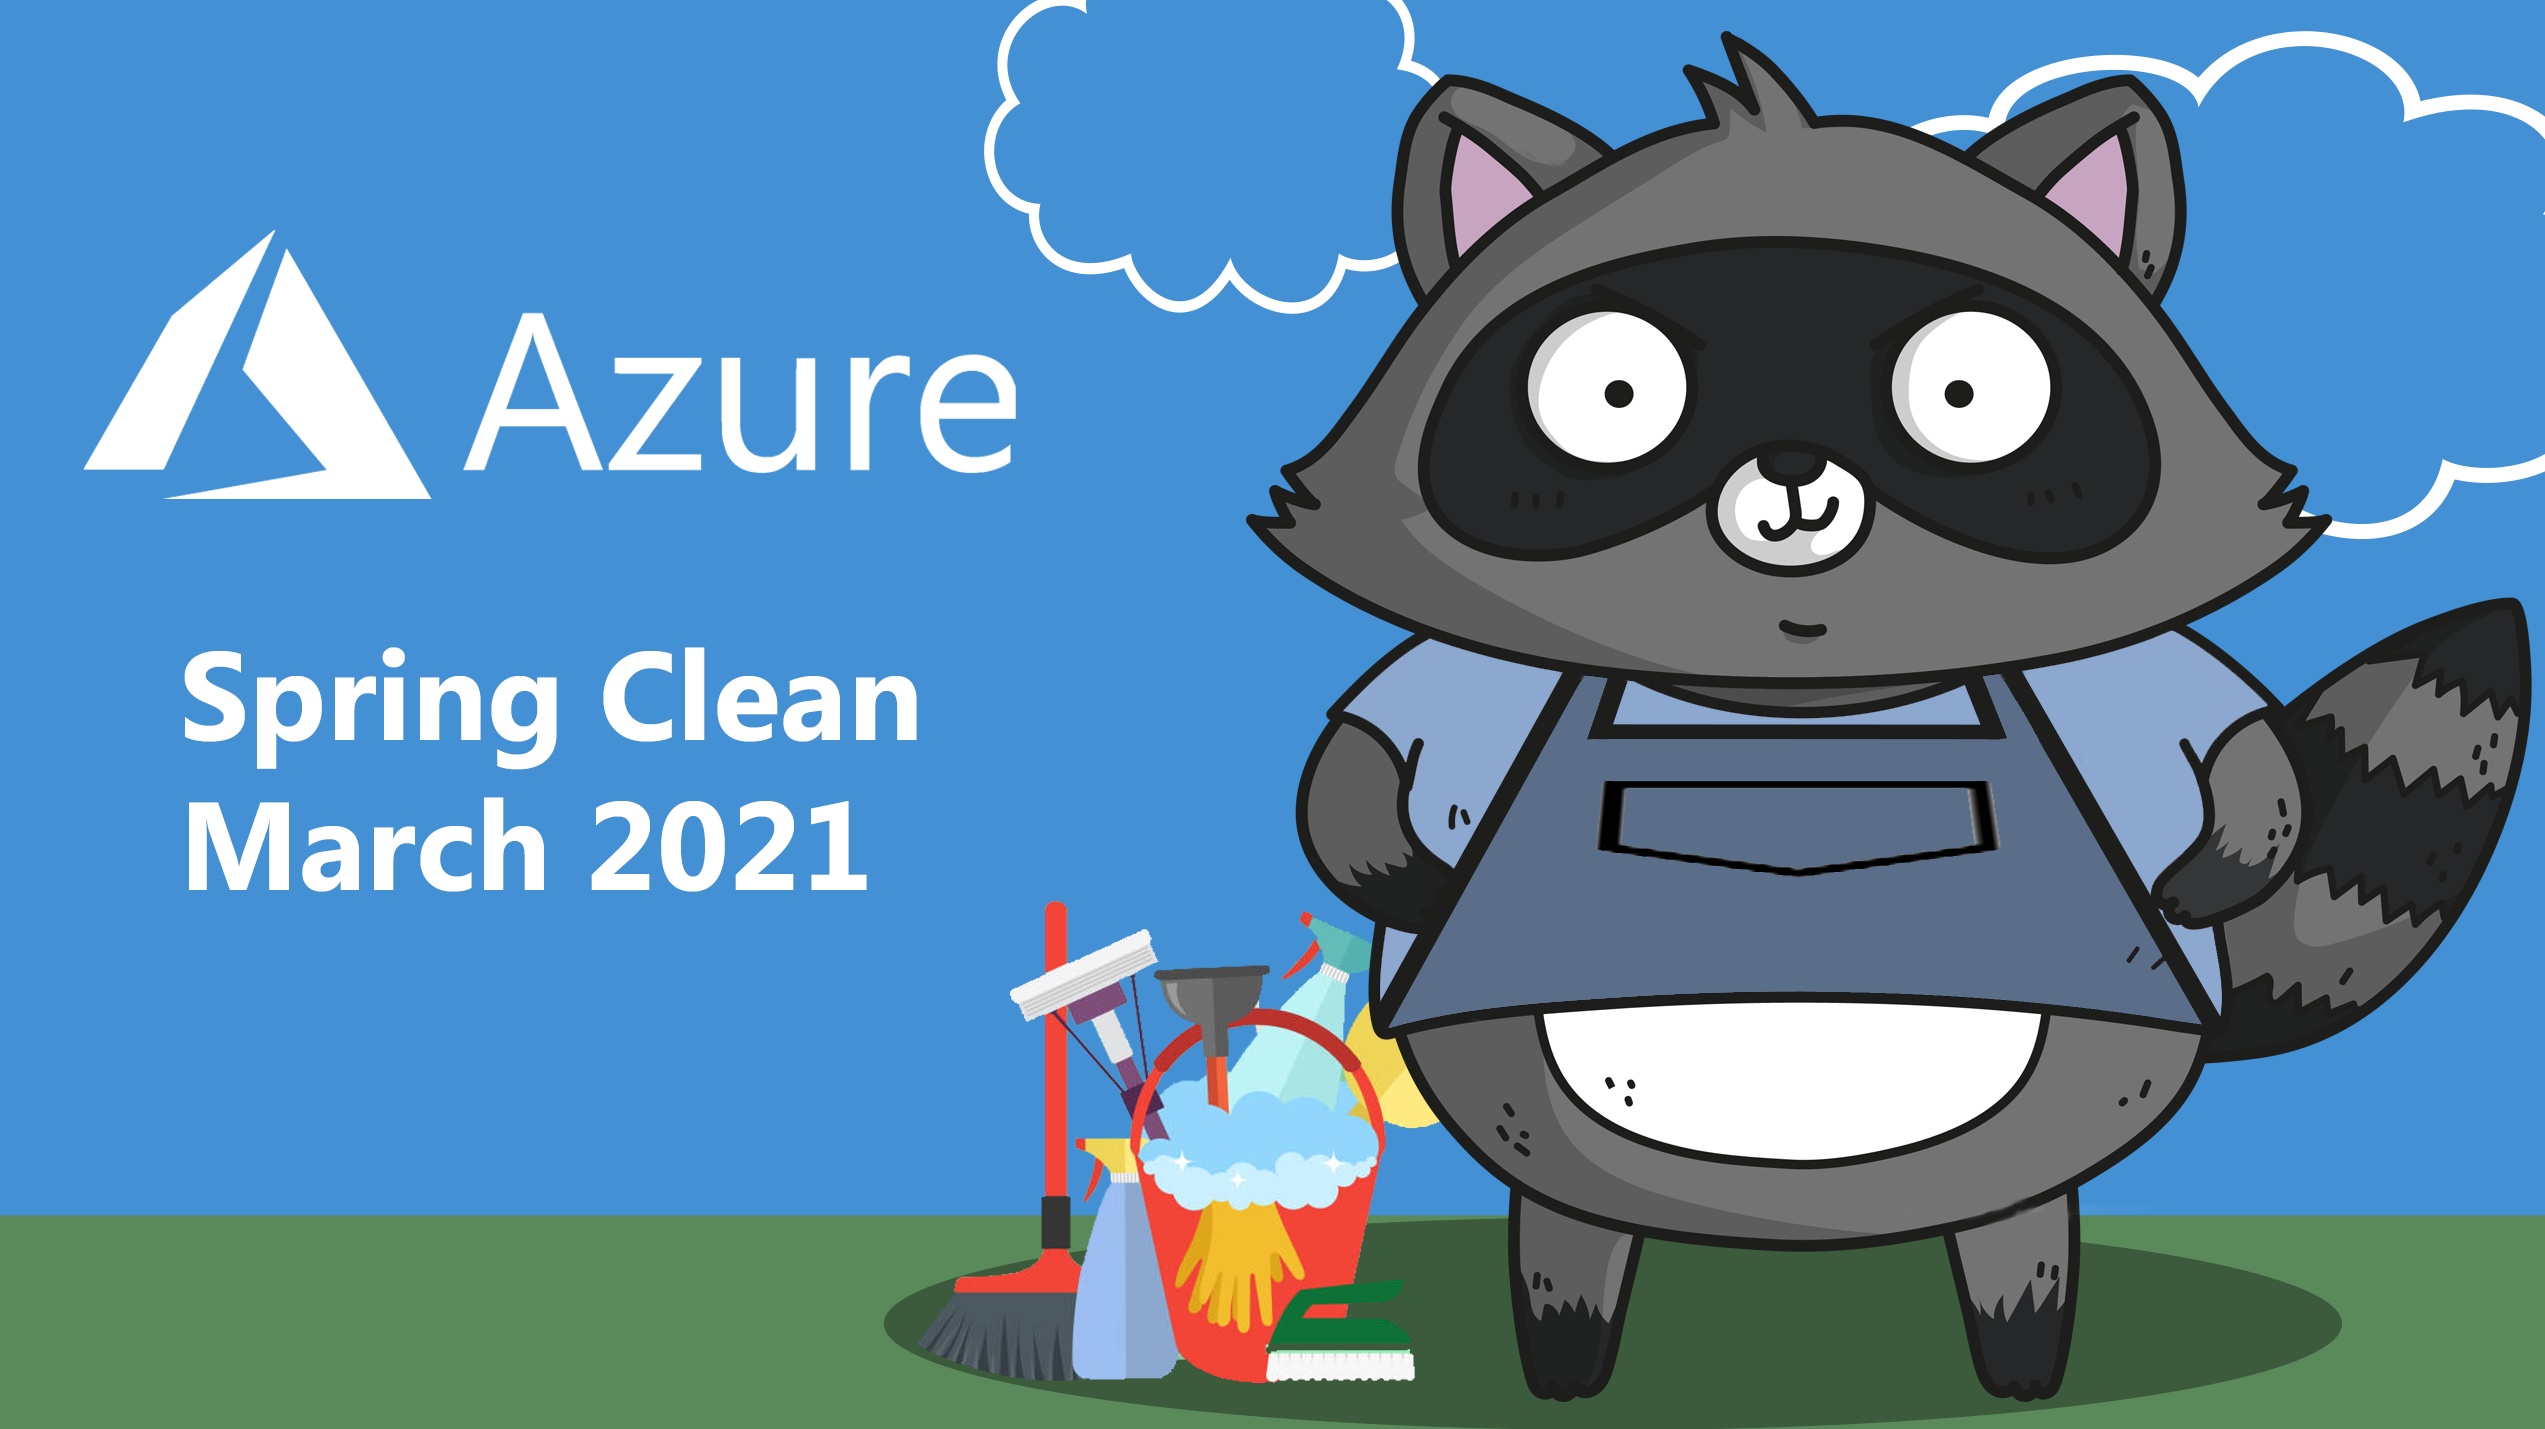 Azure Spring Clean 2021 logo